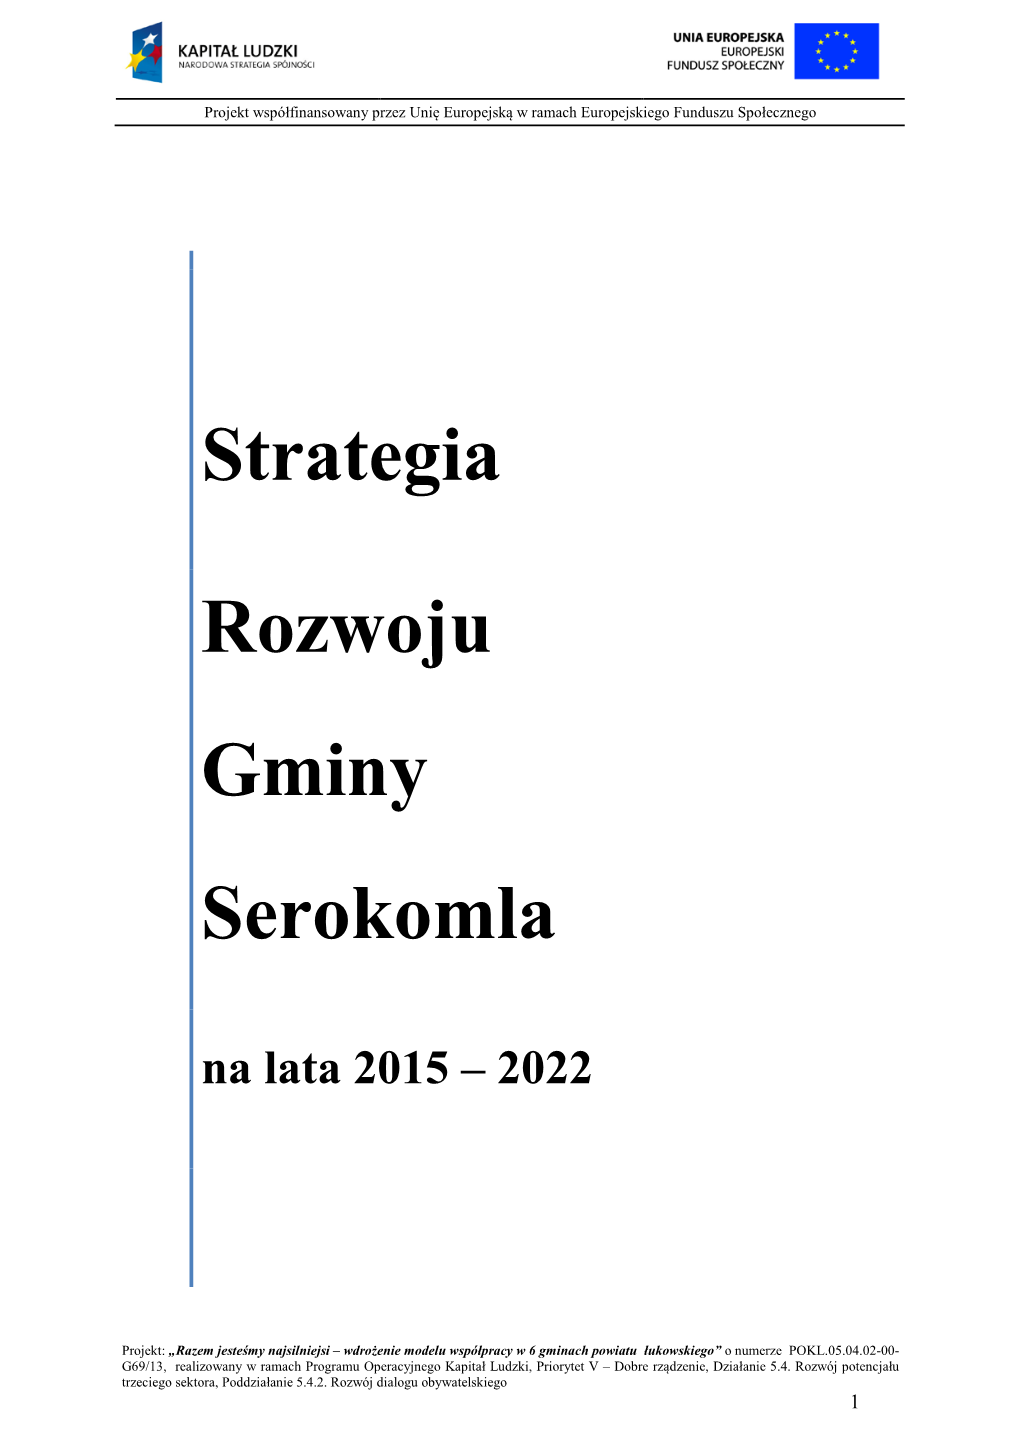 Strategia Rozwoju Gminy Serokomla Na Lata 2015-2022 Jest Kluczowym Elementem Planowania Rozwoju Lokalnego